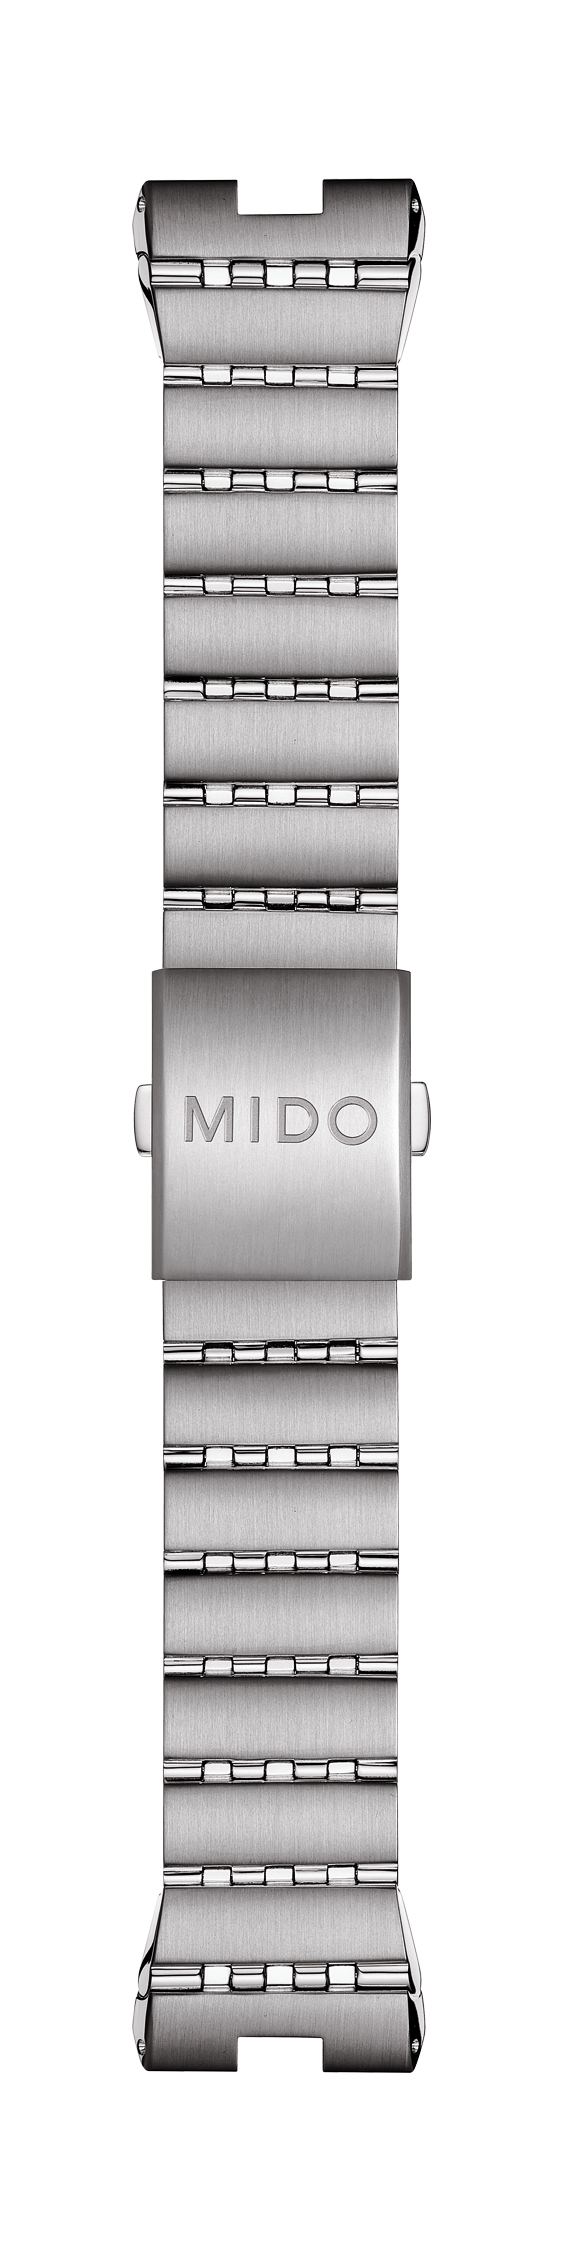 MIDO ALL DIAL 8370 Steel Watch Band Bracelet - WATCHBAND EXPERT